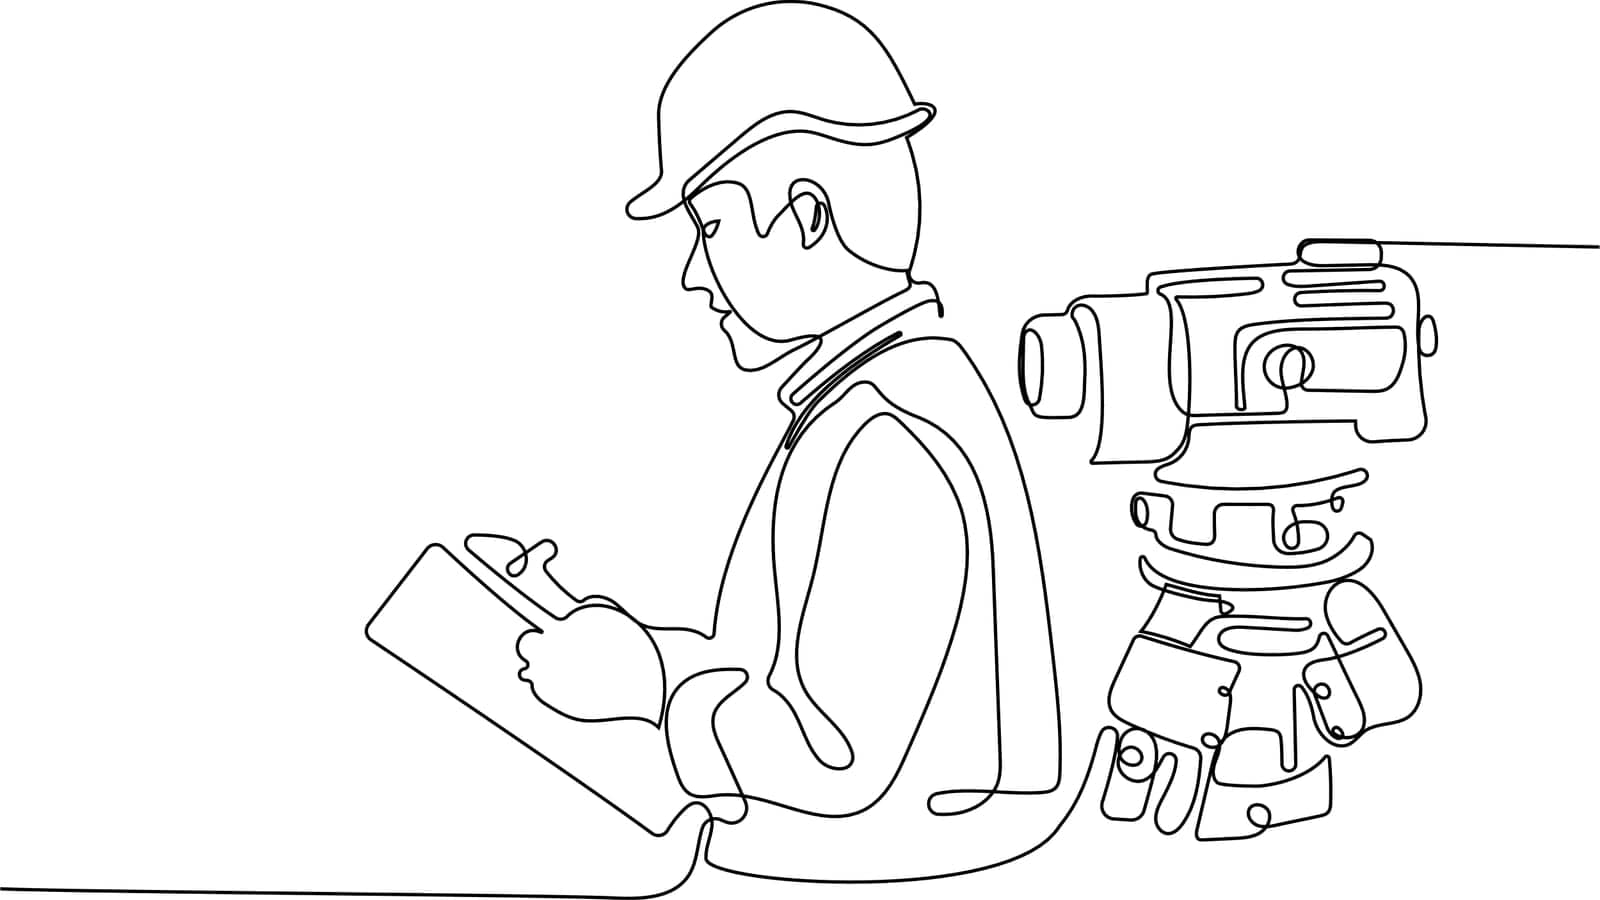 Surveyor with a tripod icon. Geodesic tripod. by milastokerpro